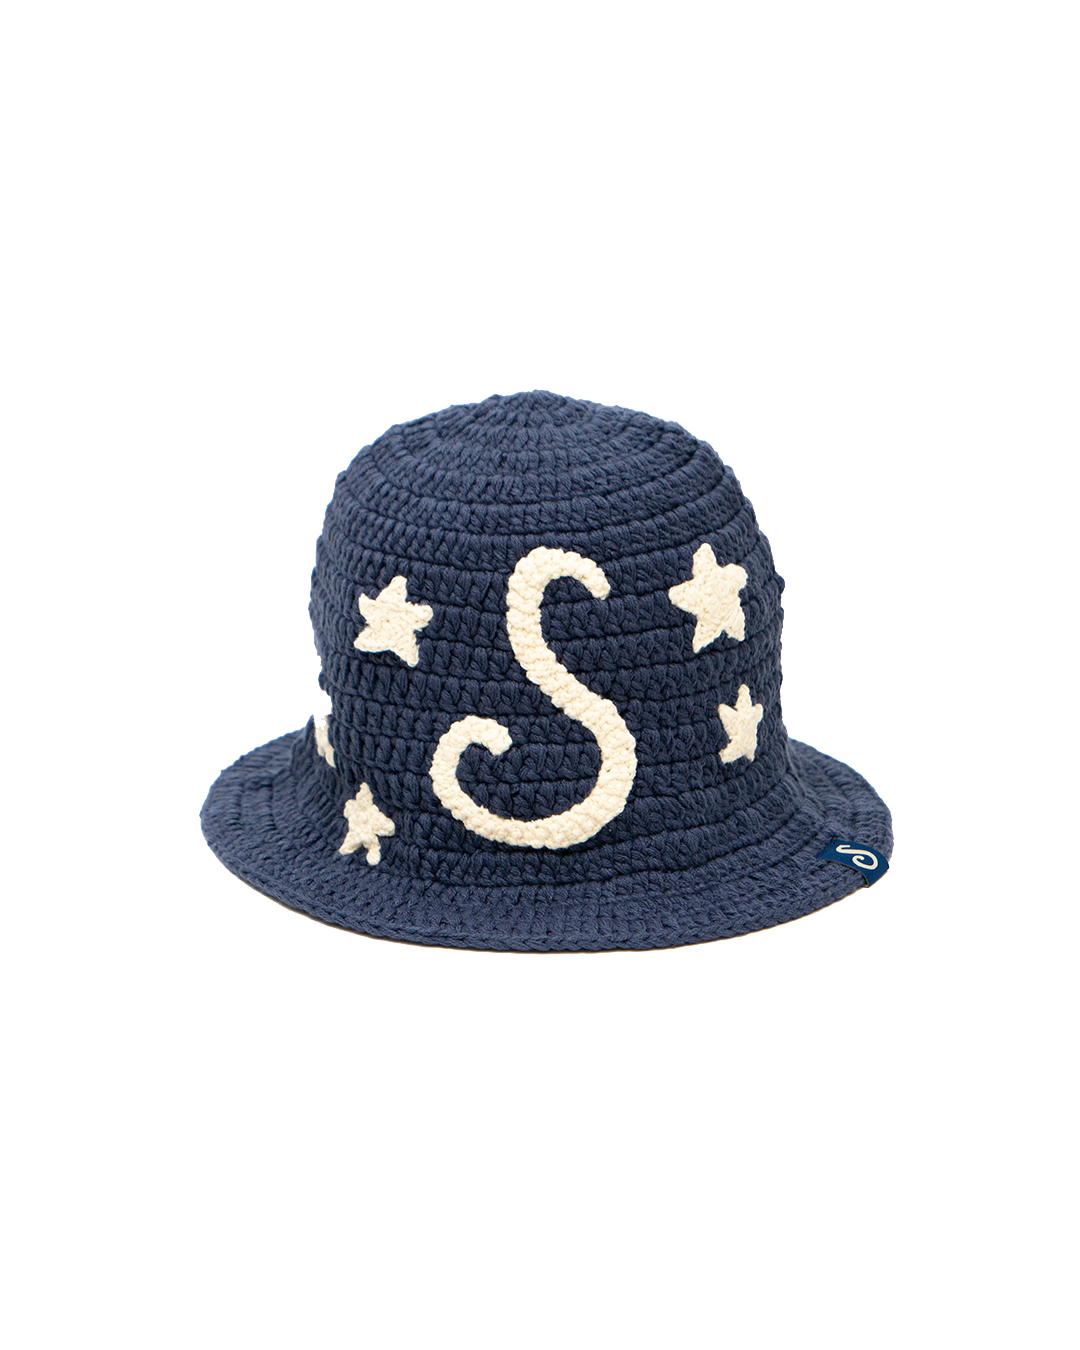 S STARS KNIT HAT